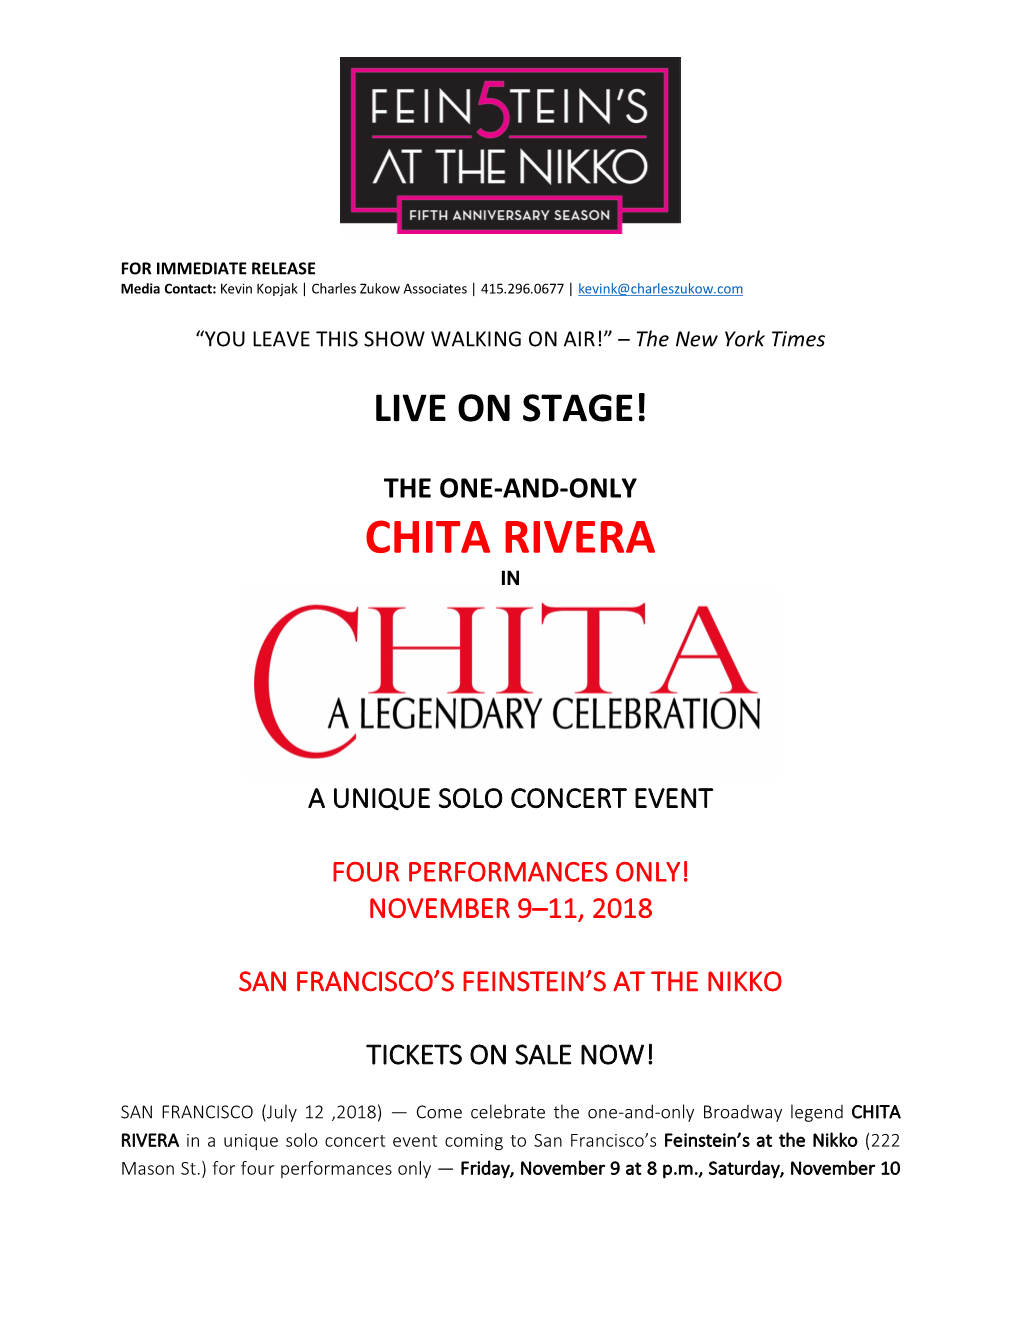 Chita Rivera In